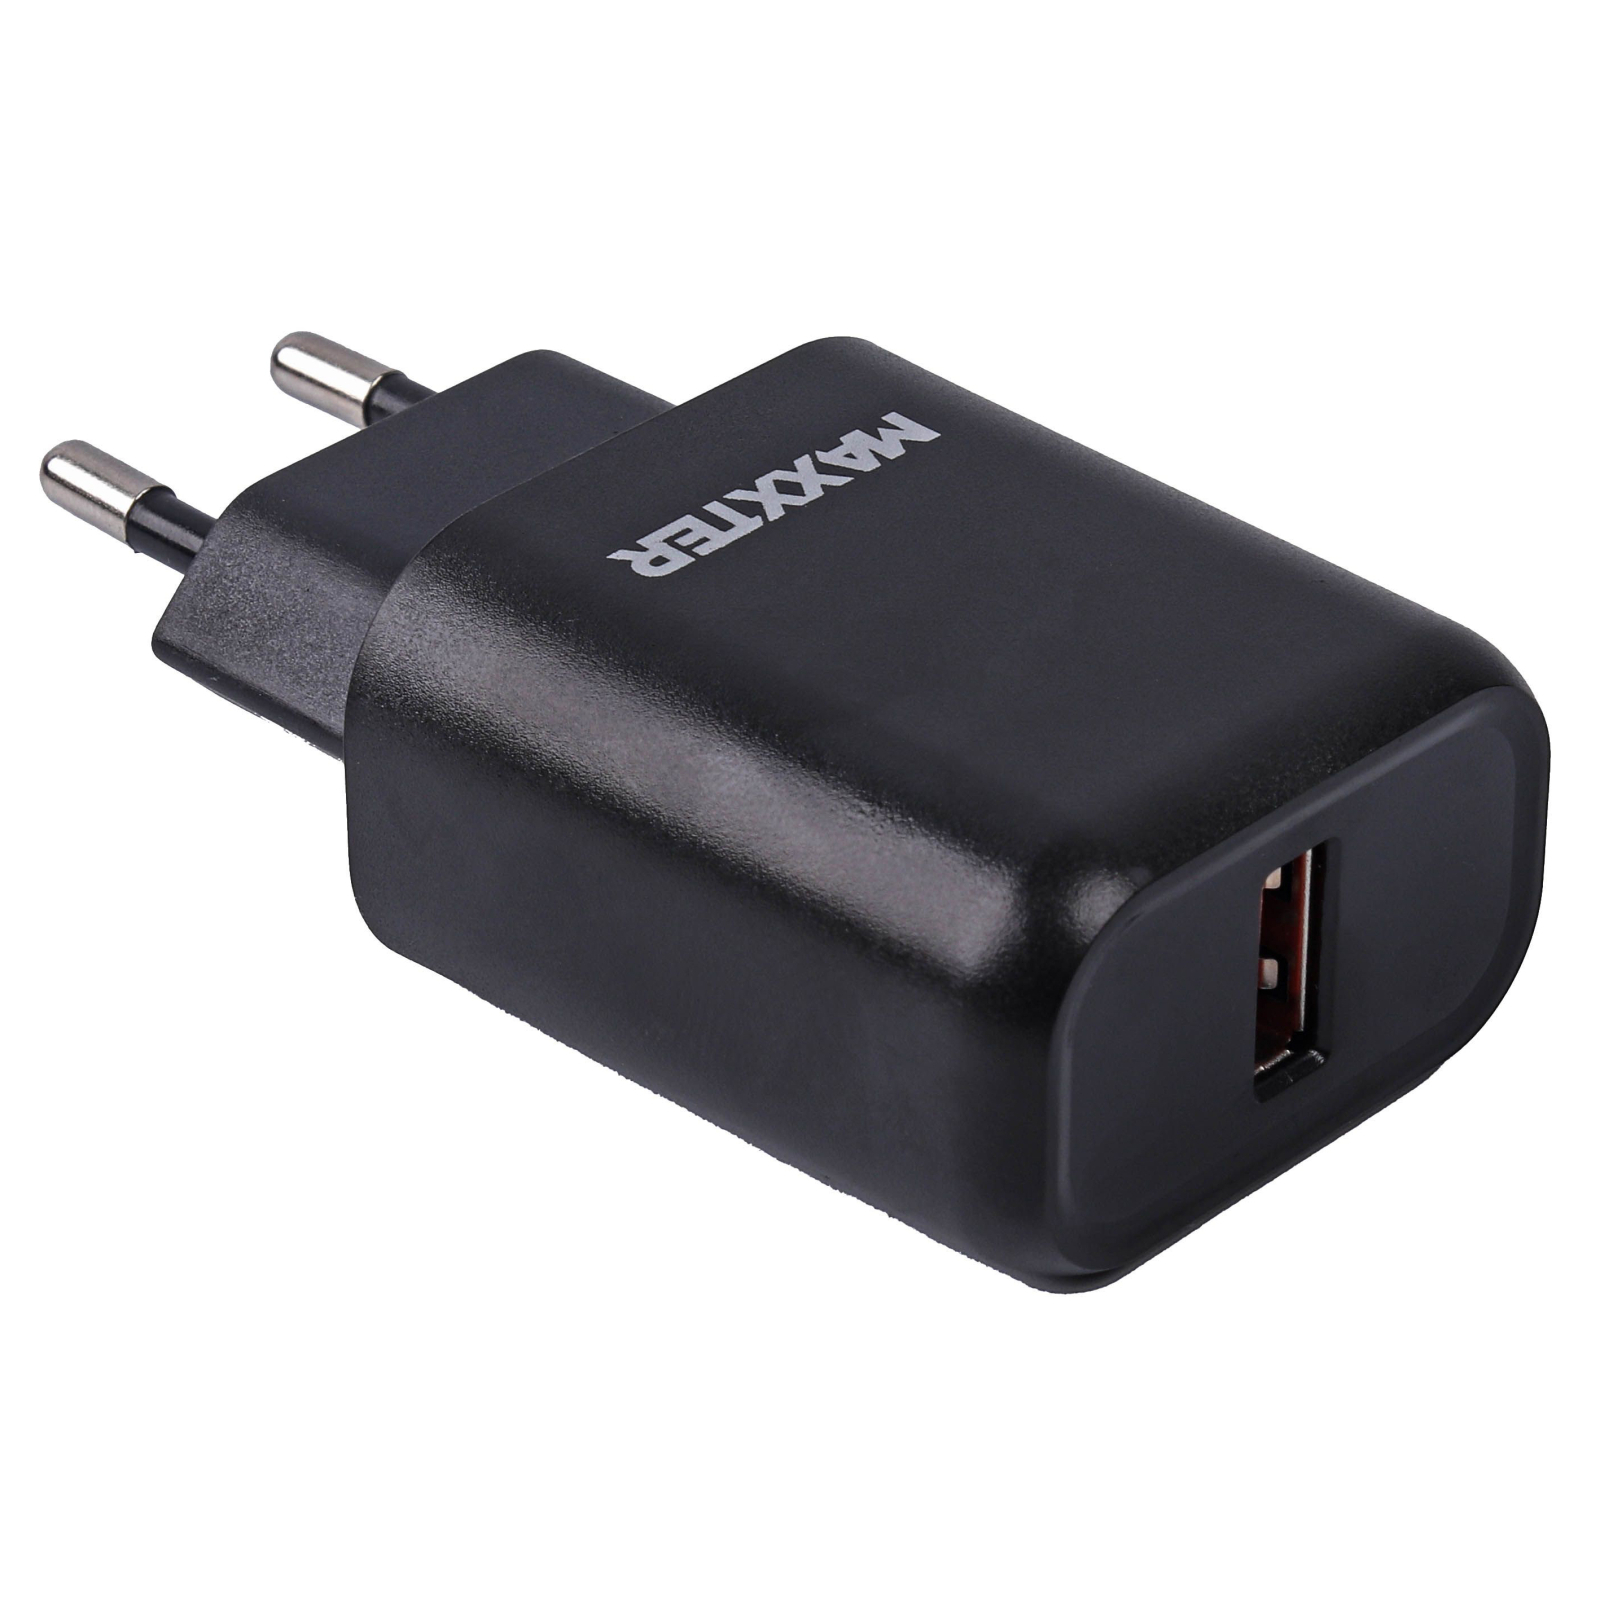 Зарядний пристрій Maxxter 1 USB + cable Micro-USB (WC-QC-AtM-01)